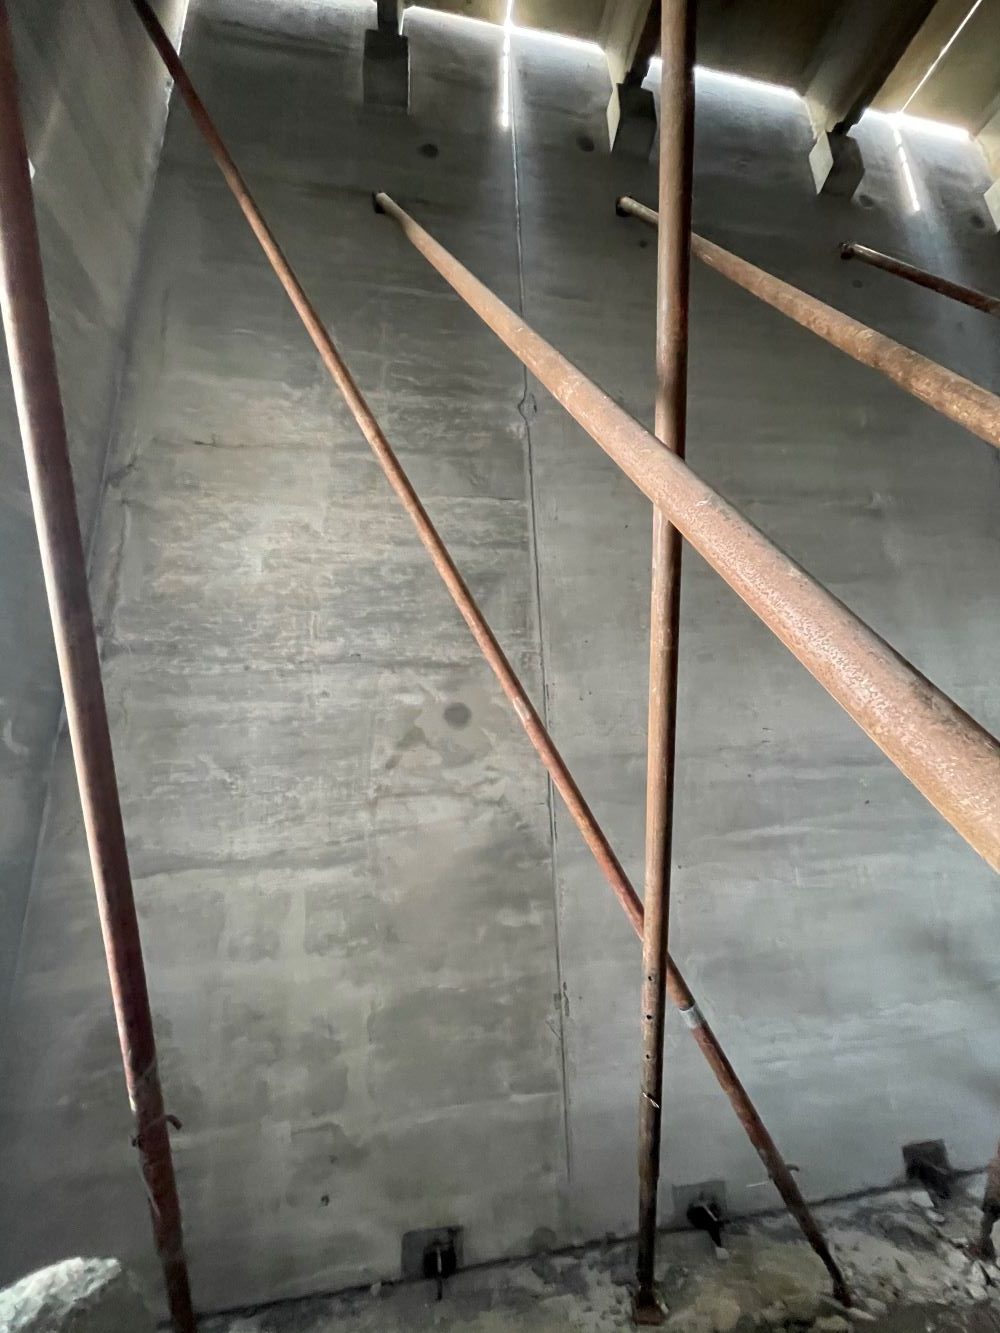 Steel beams in concrete room